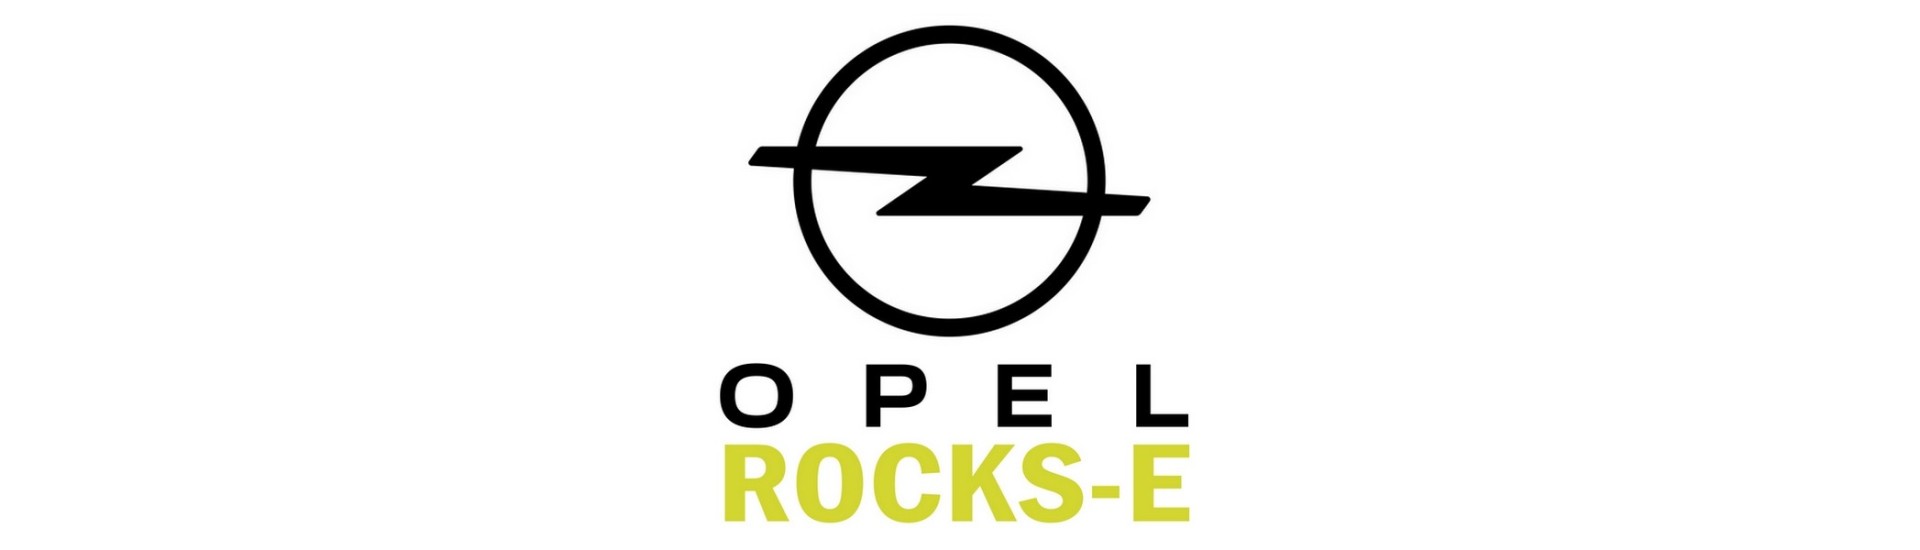 Clignotant au meilleur prix pour voiture sans permis Opel Rocks-E